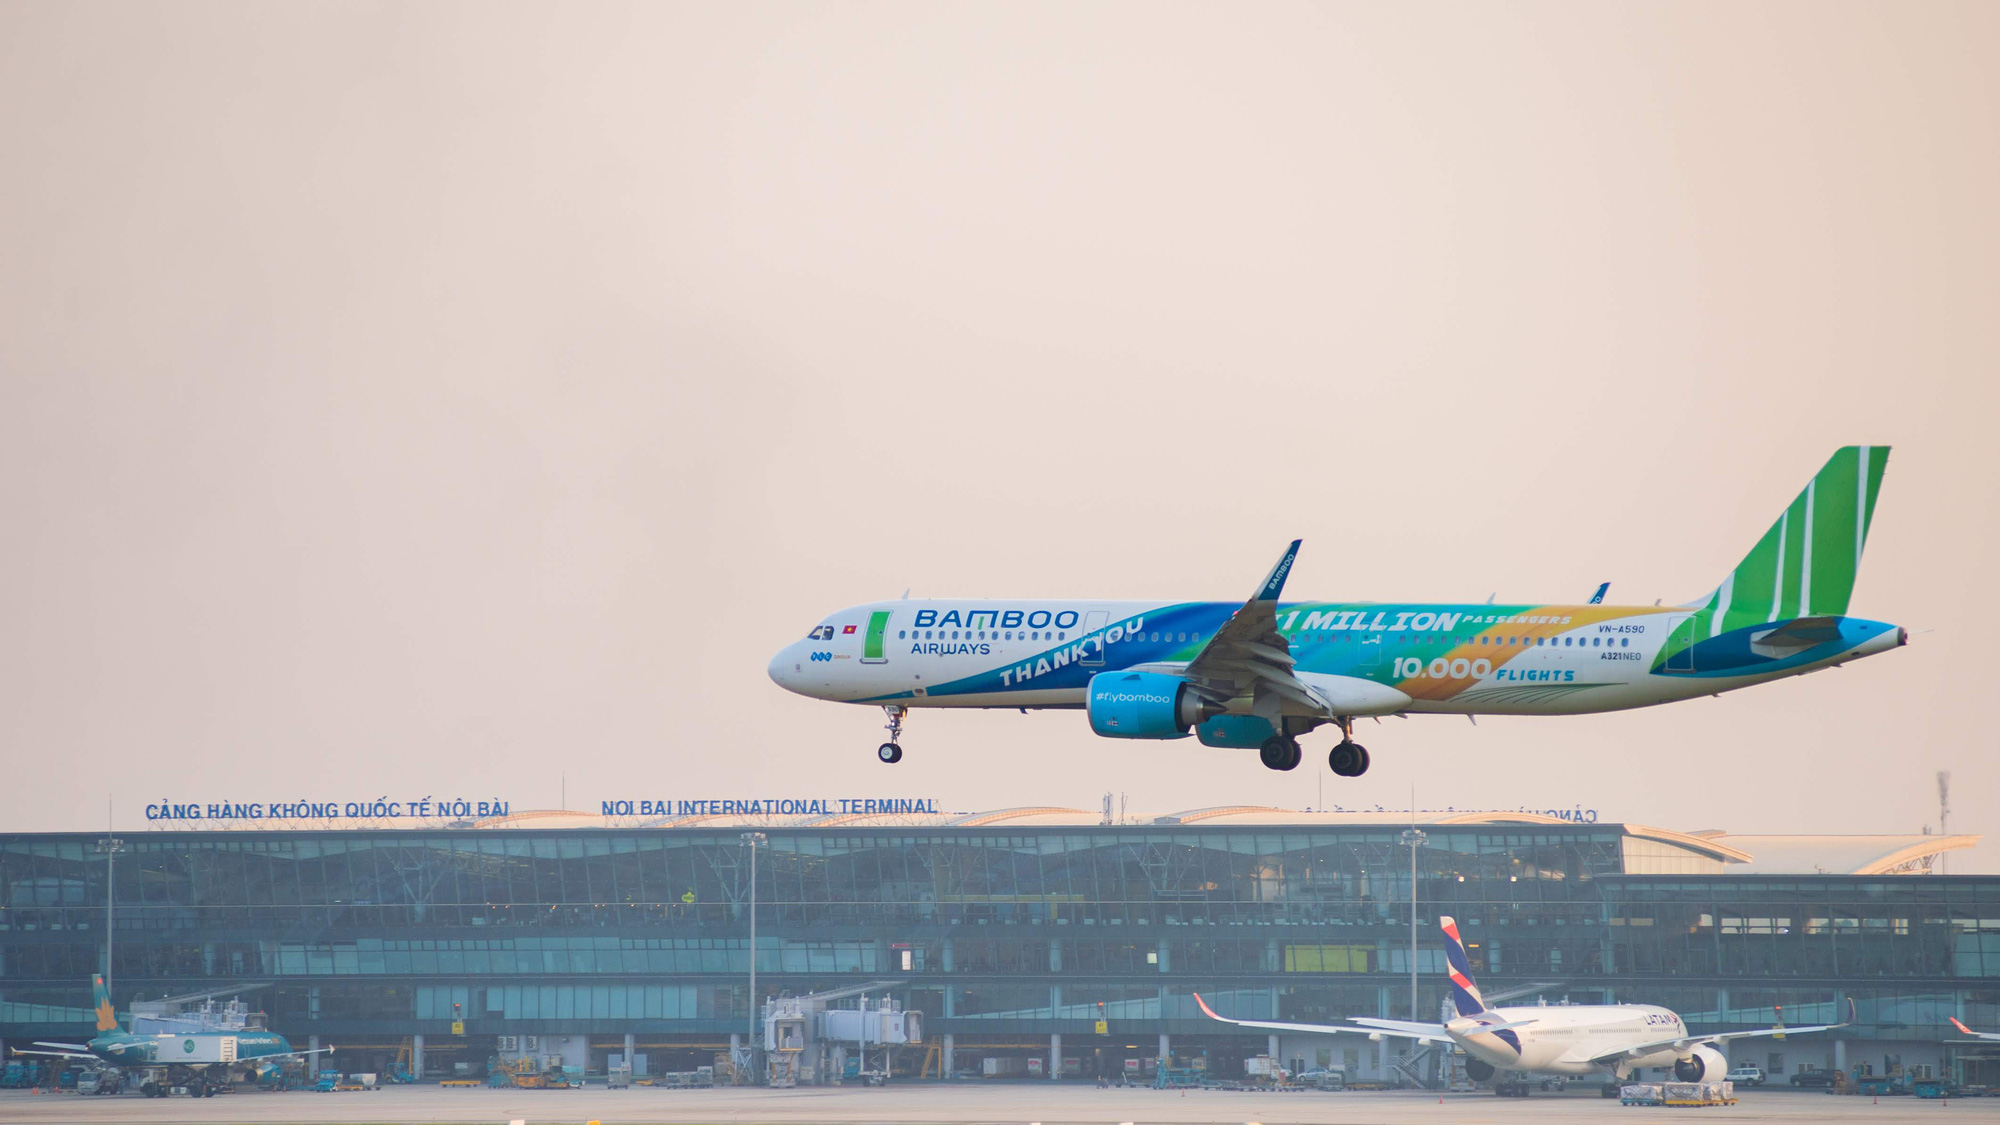 Bay thẳng Việt - Mỹ, Bamboo Airways sẽ sớm được mở bán vé máy bay? - Ảnh 1.